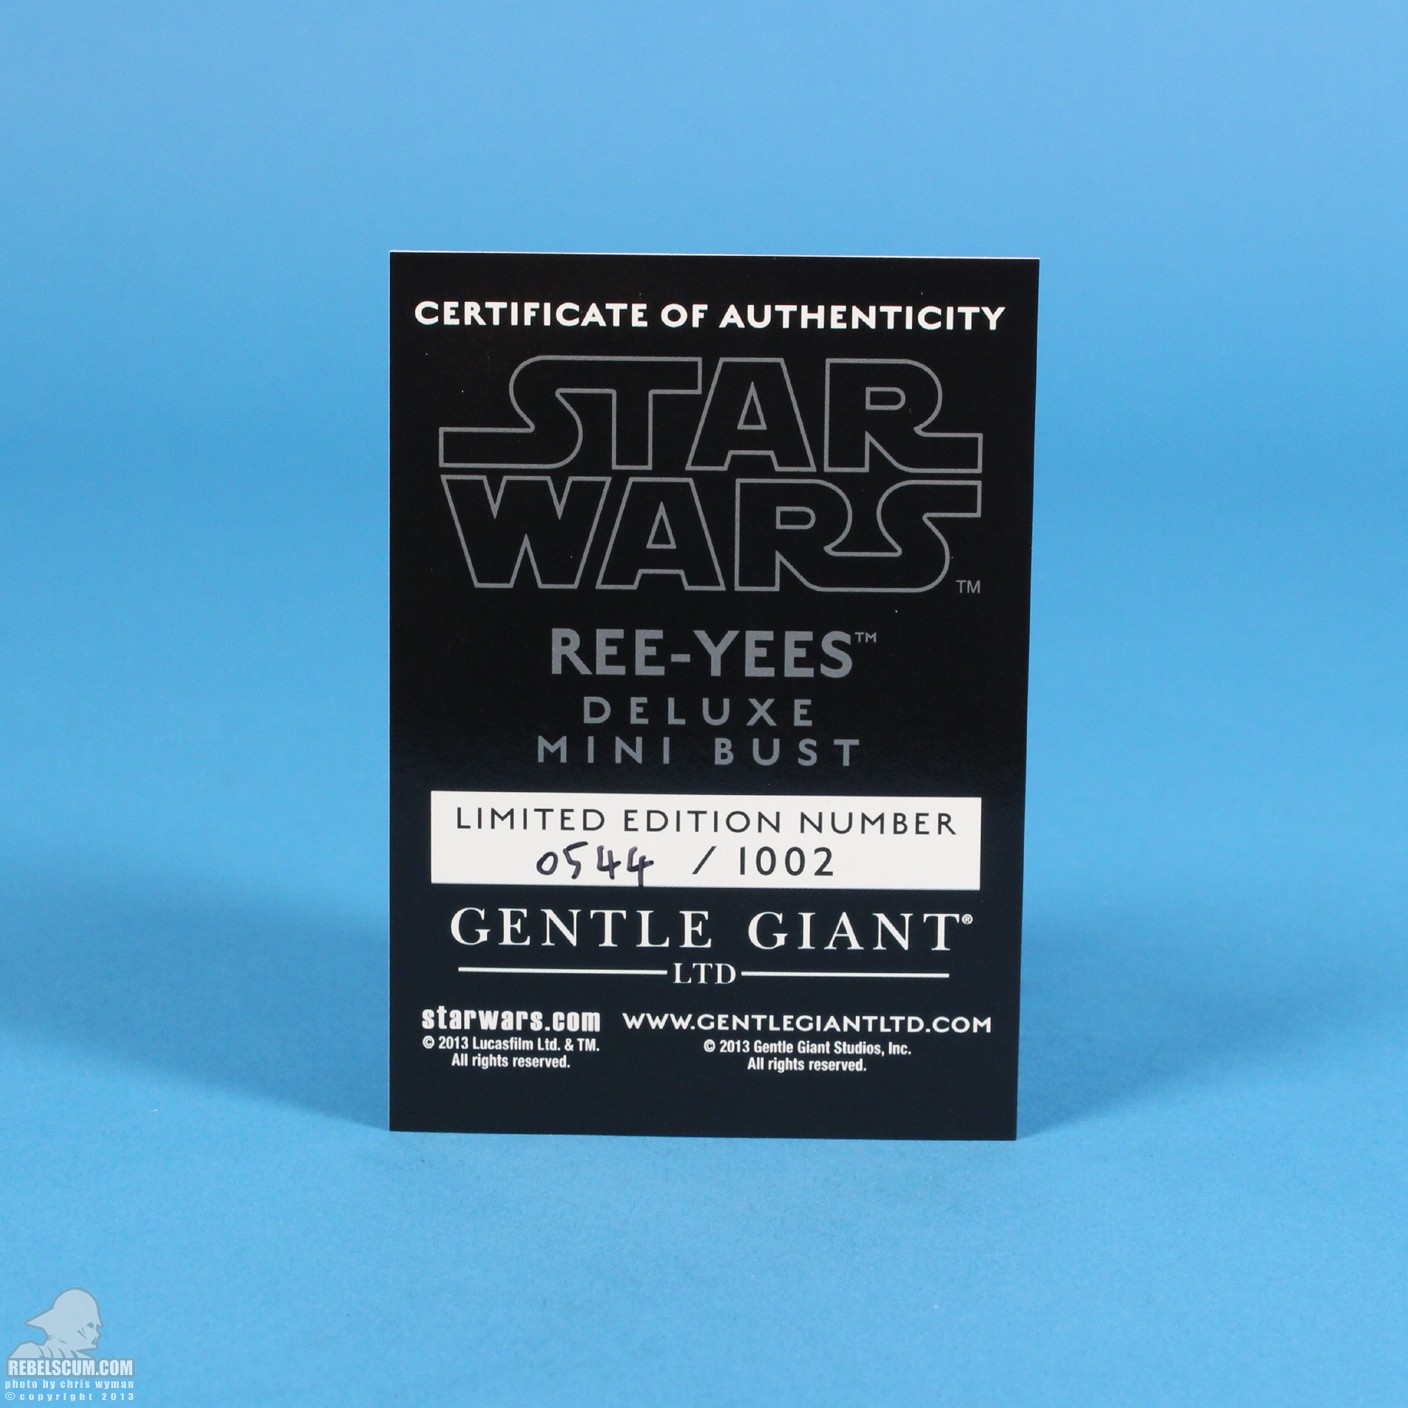 Ree-Yees-Mini-Bust-Gentle-Giant-Ltd-032.jpg